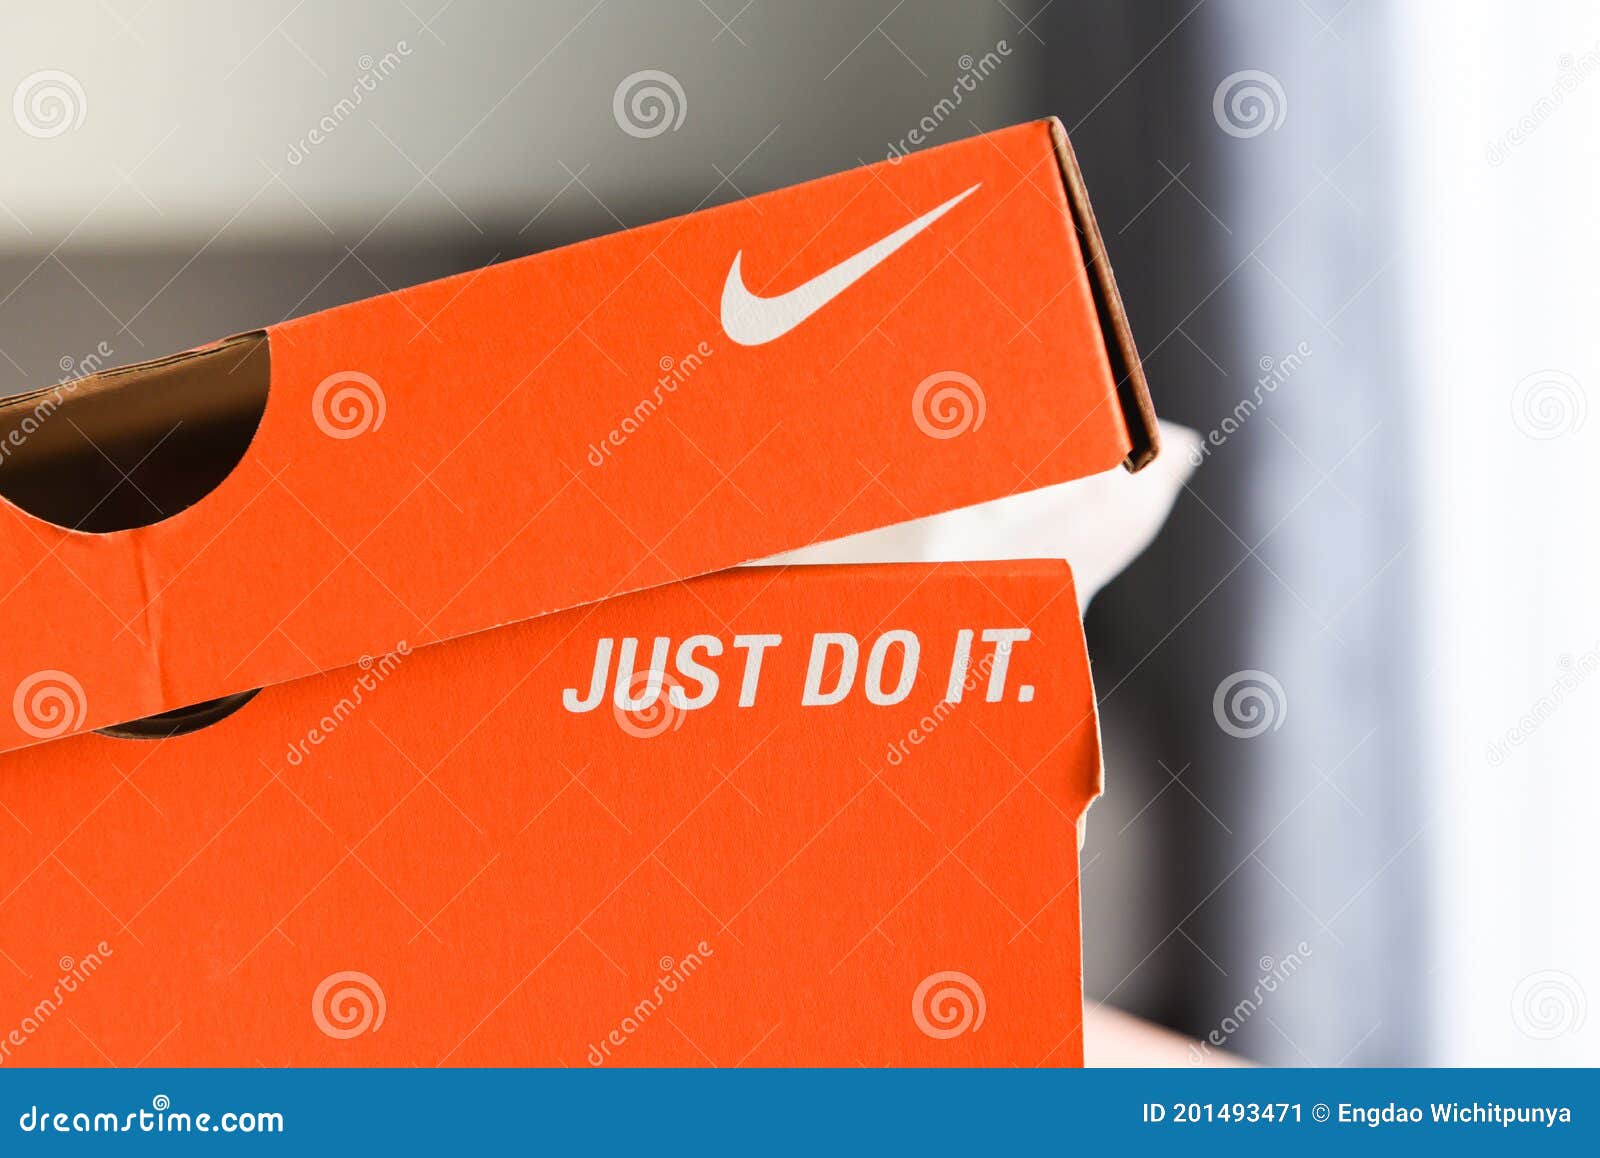 Caja De Zapatillas Nike Con Sólo Hacer Y El Logo De Nike En El Cuadro Naranja En Tienda Foto editorial - de ropa, gimnasio: 201493471